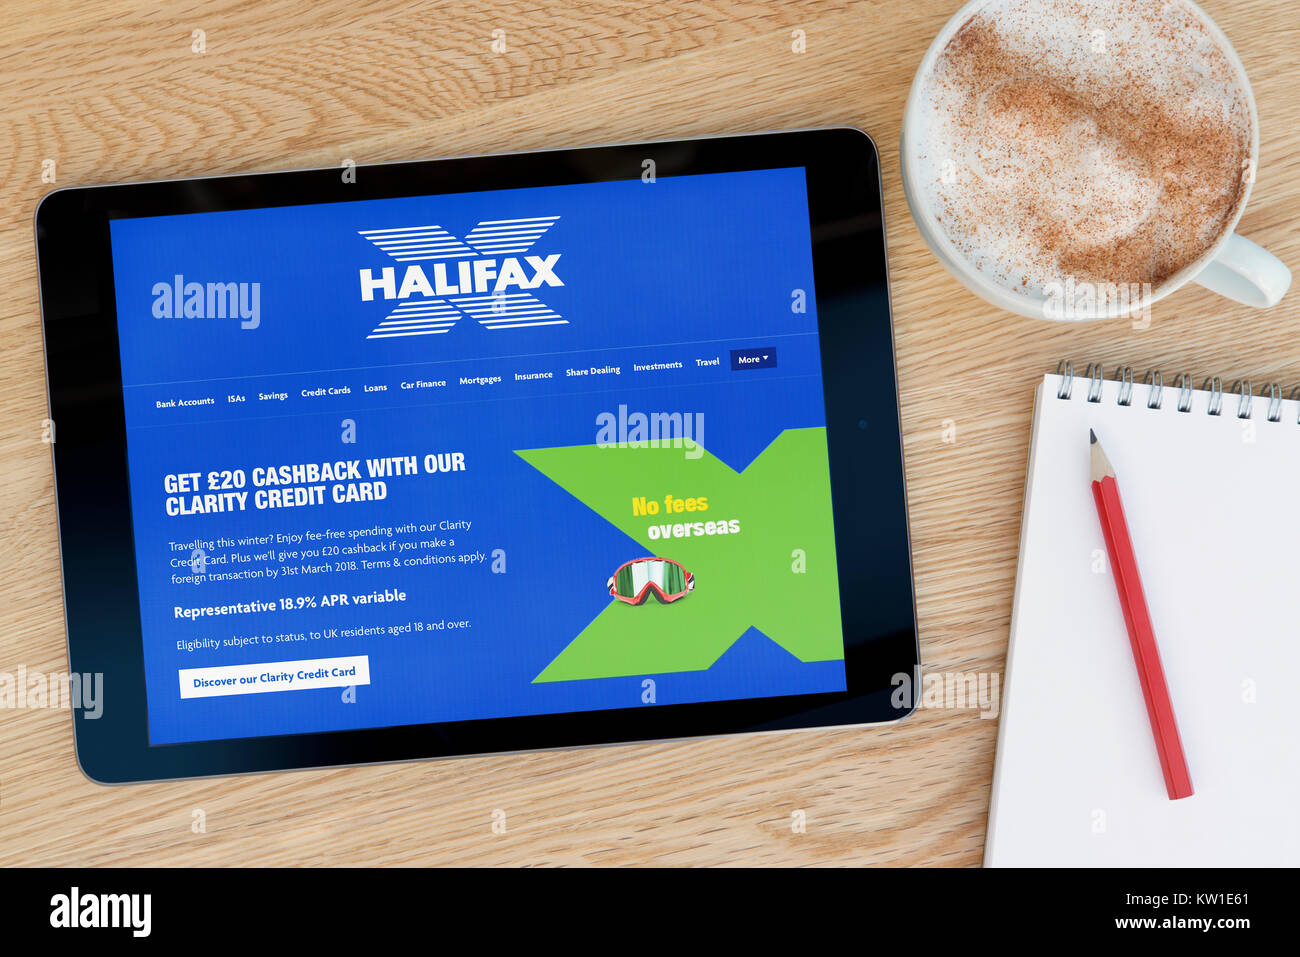 L'Halifax Building Society sito web su un iPad dispositivo tablet, appoggiato su un tavolo di legno accanto a un blocco note, matita e tazza di caffè (editoriale solo) Foto Stock